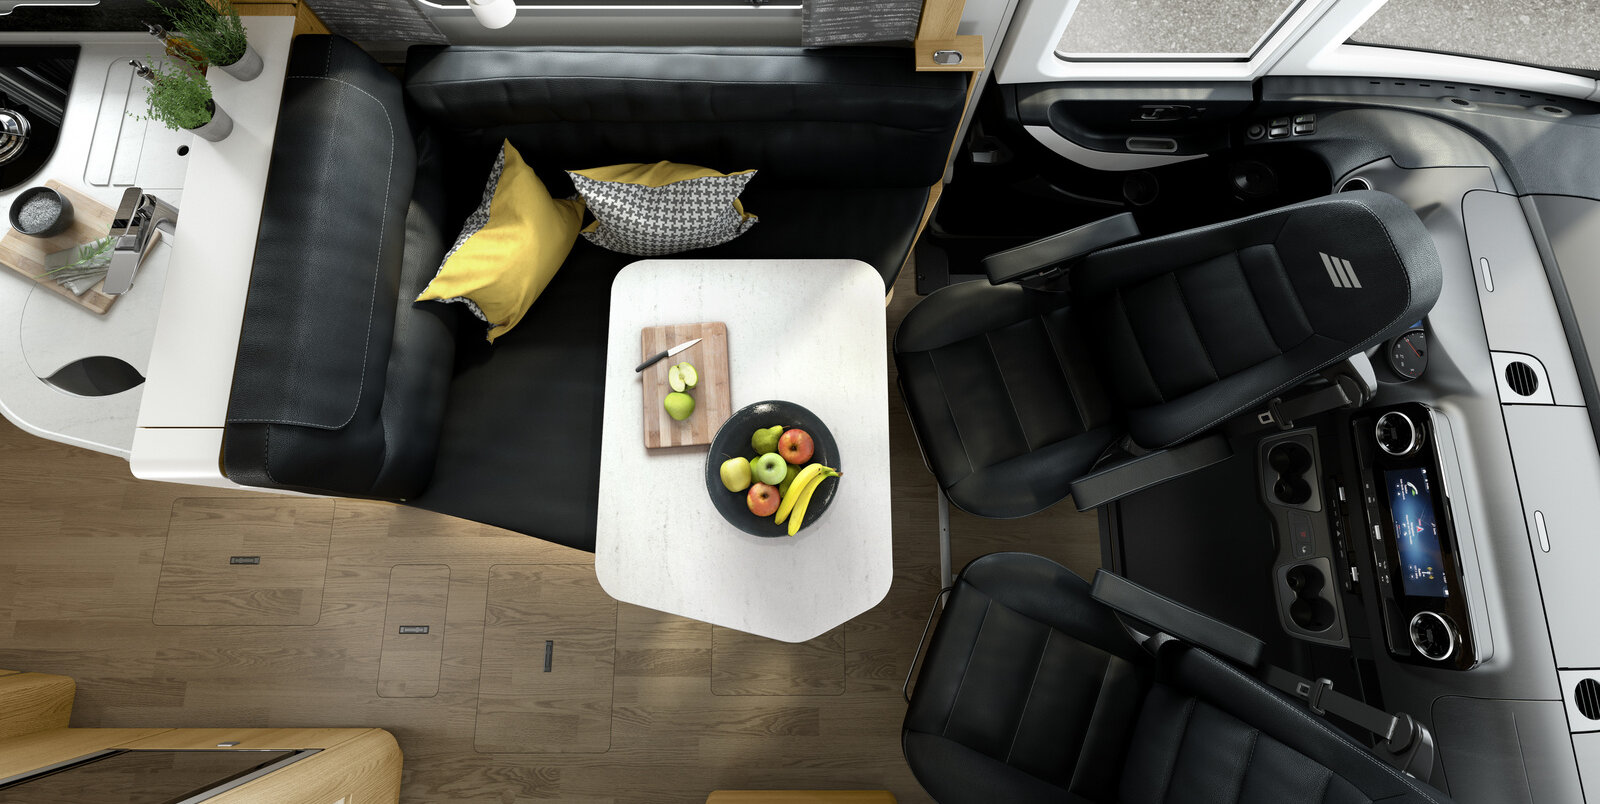 Dinette incl. sedili cabina guida in stile pelle nero dell’HYMER MasterLine, sul tavolo apparecchiato si trova un piatto con frutta